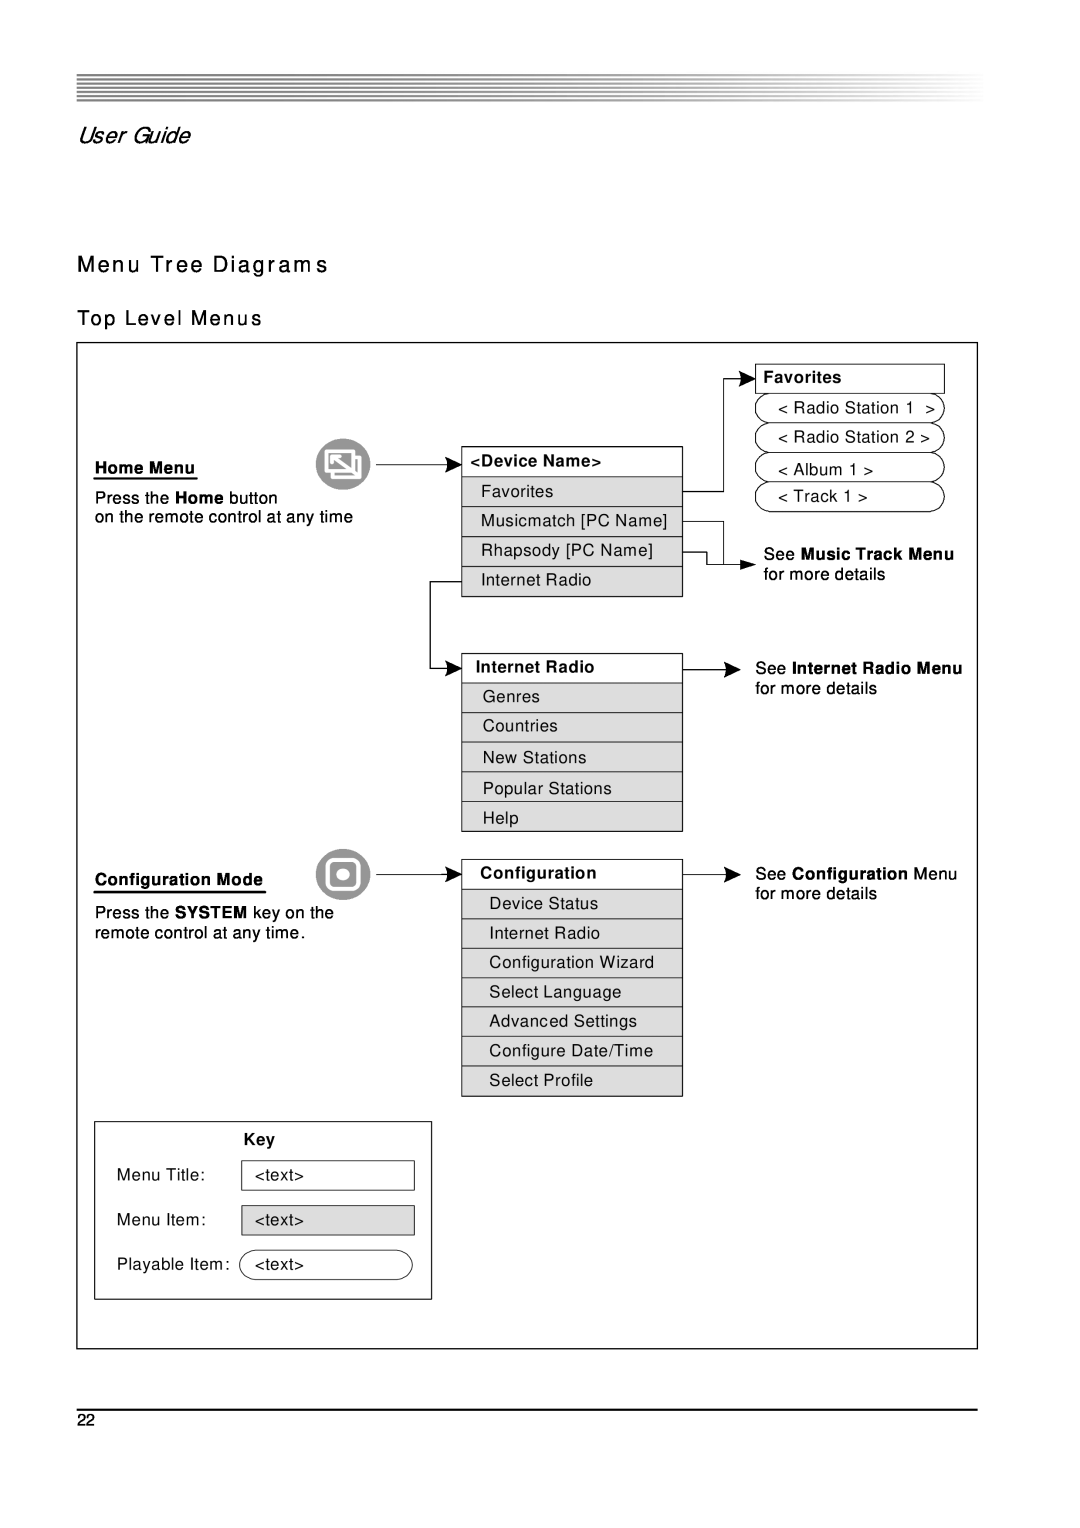 SMC Networks 802.11g manual Menu Tree Diagrams, User Guide, Top Level Menus 